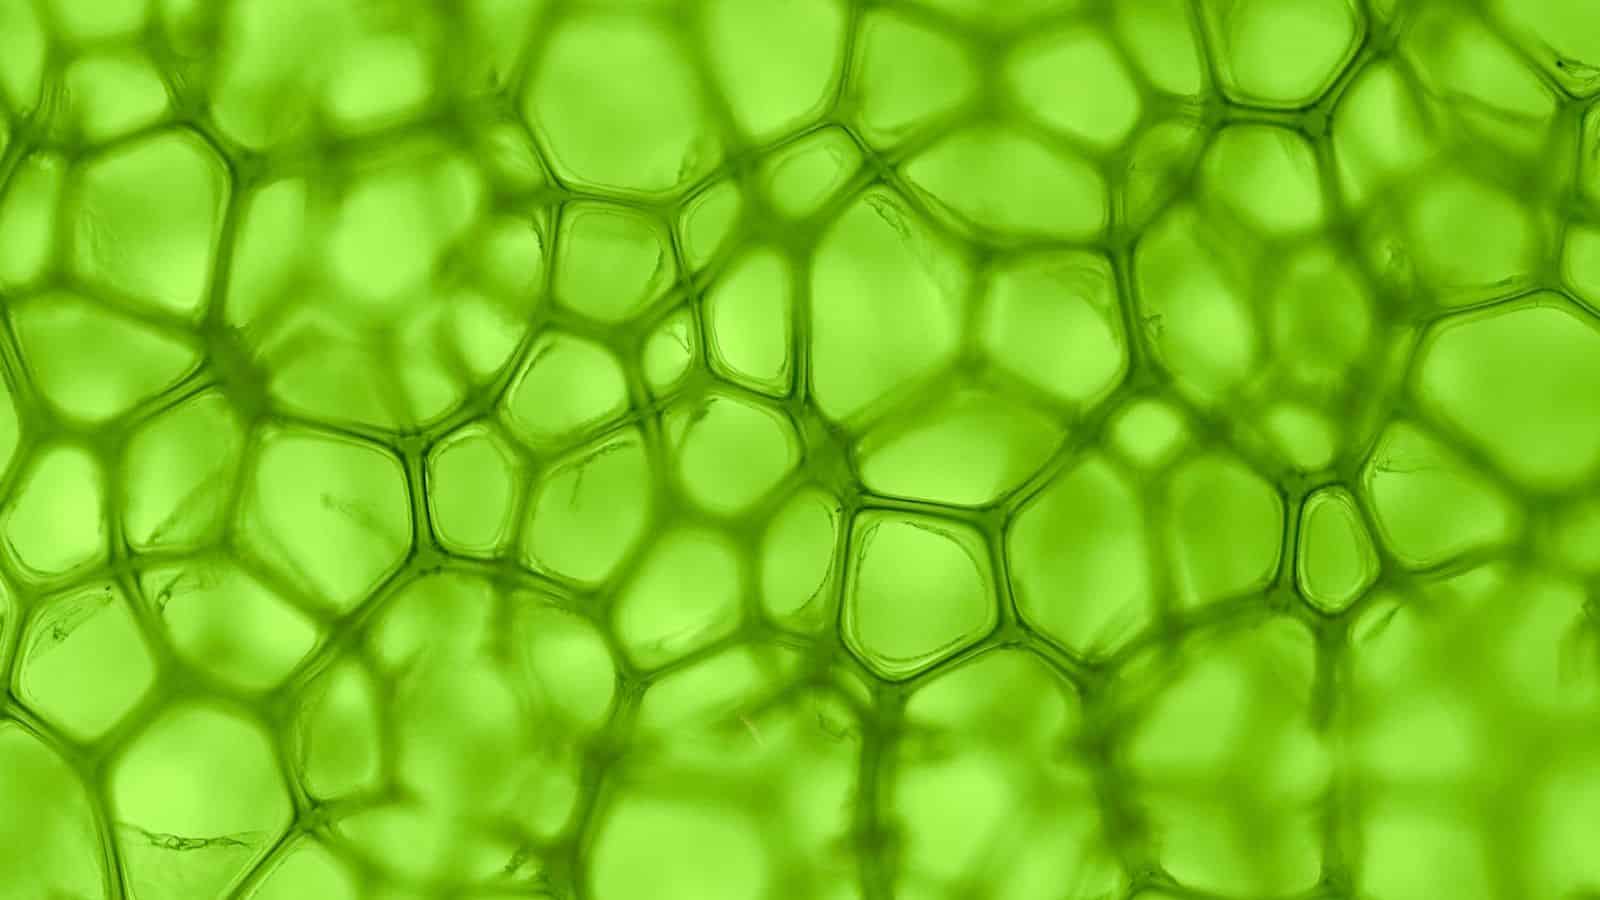 الطحالب الخضراء طفرة جديدة في البحث عن الطاقة: إنتاج الوقود الحيوي من الطحالب البحرية المُعدلة وراثياً مجلة نقطة العلمية